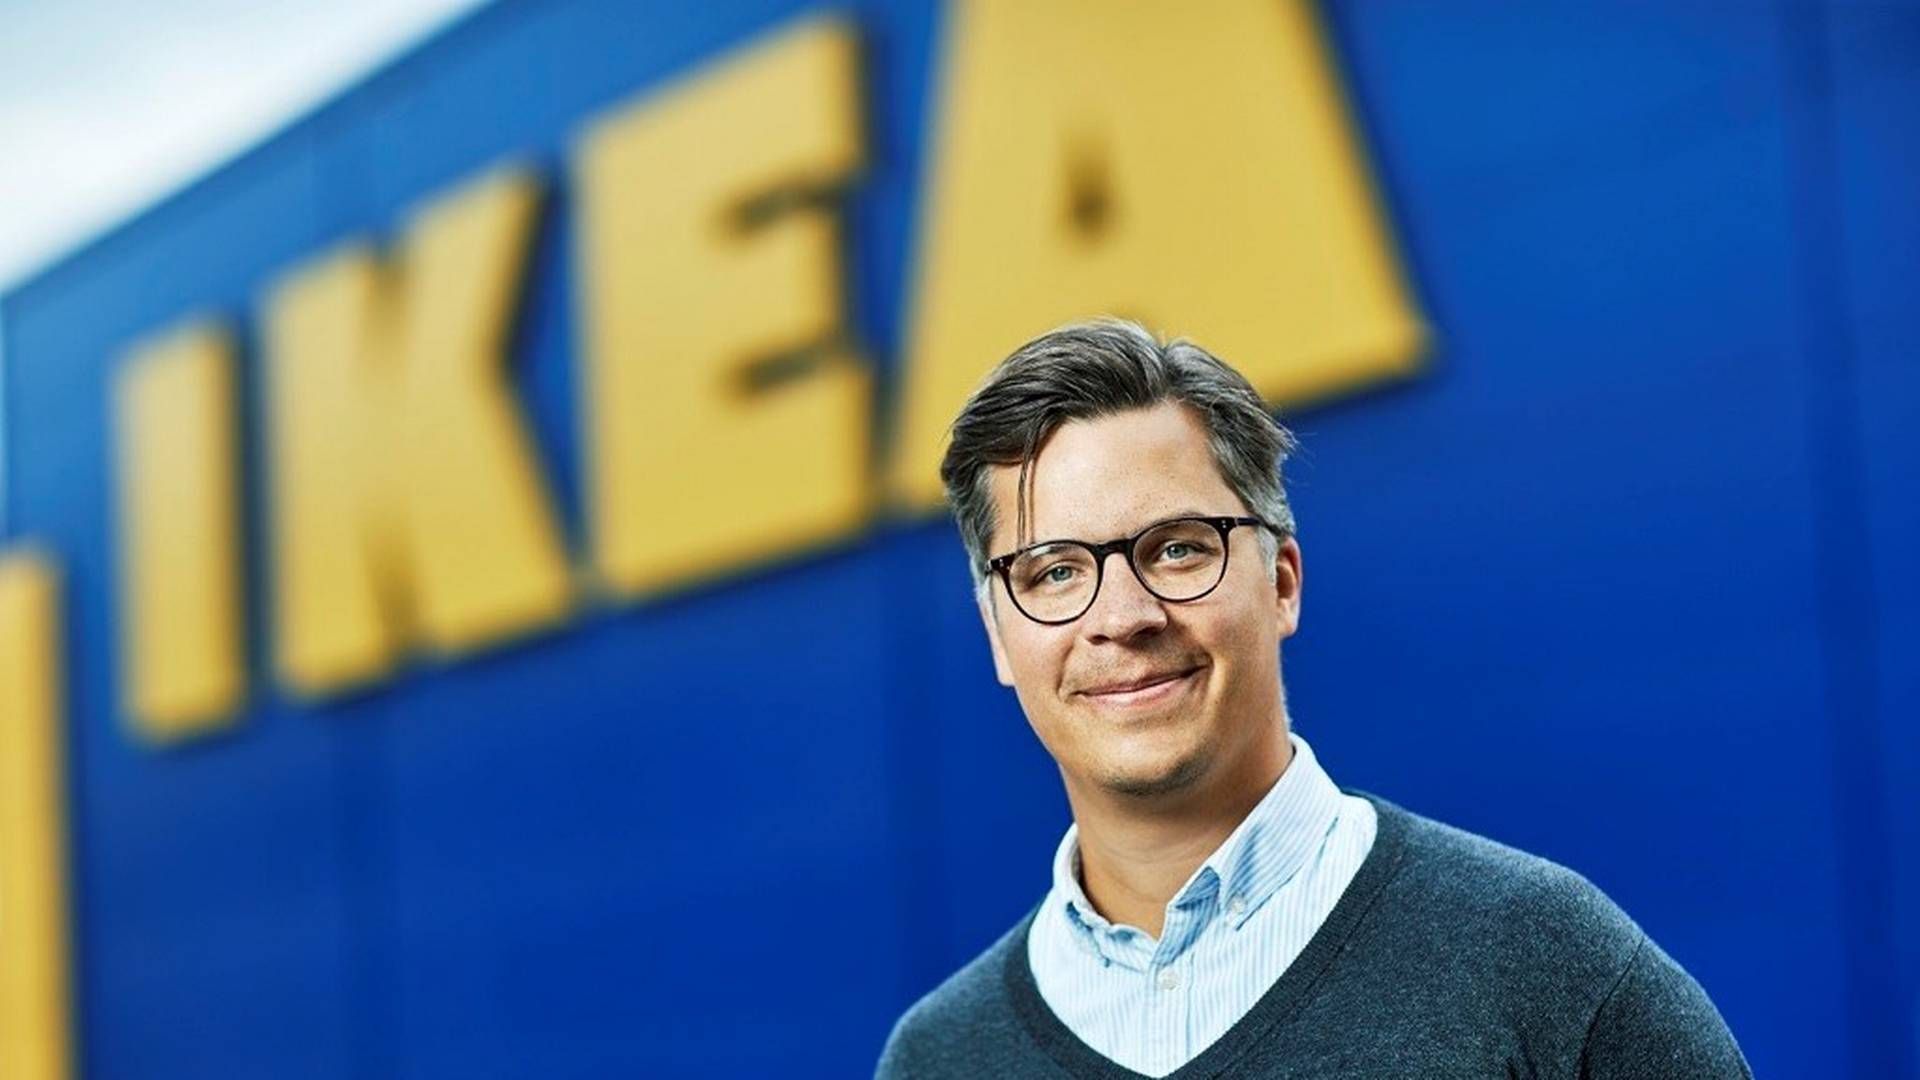 UTFORDRINGER: Landssjef for Ikea Norge, Carl Aaby, opplever utfordringer med forsyninger av materialer, noe som kan forsinke åpningen av deres nye sentralvarelager i Vestby. | Foto: Ikea